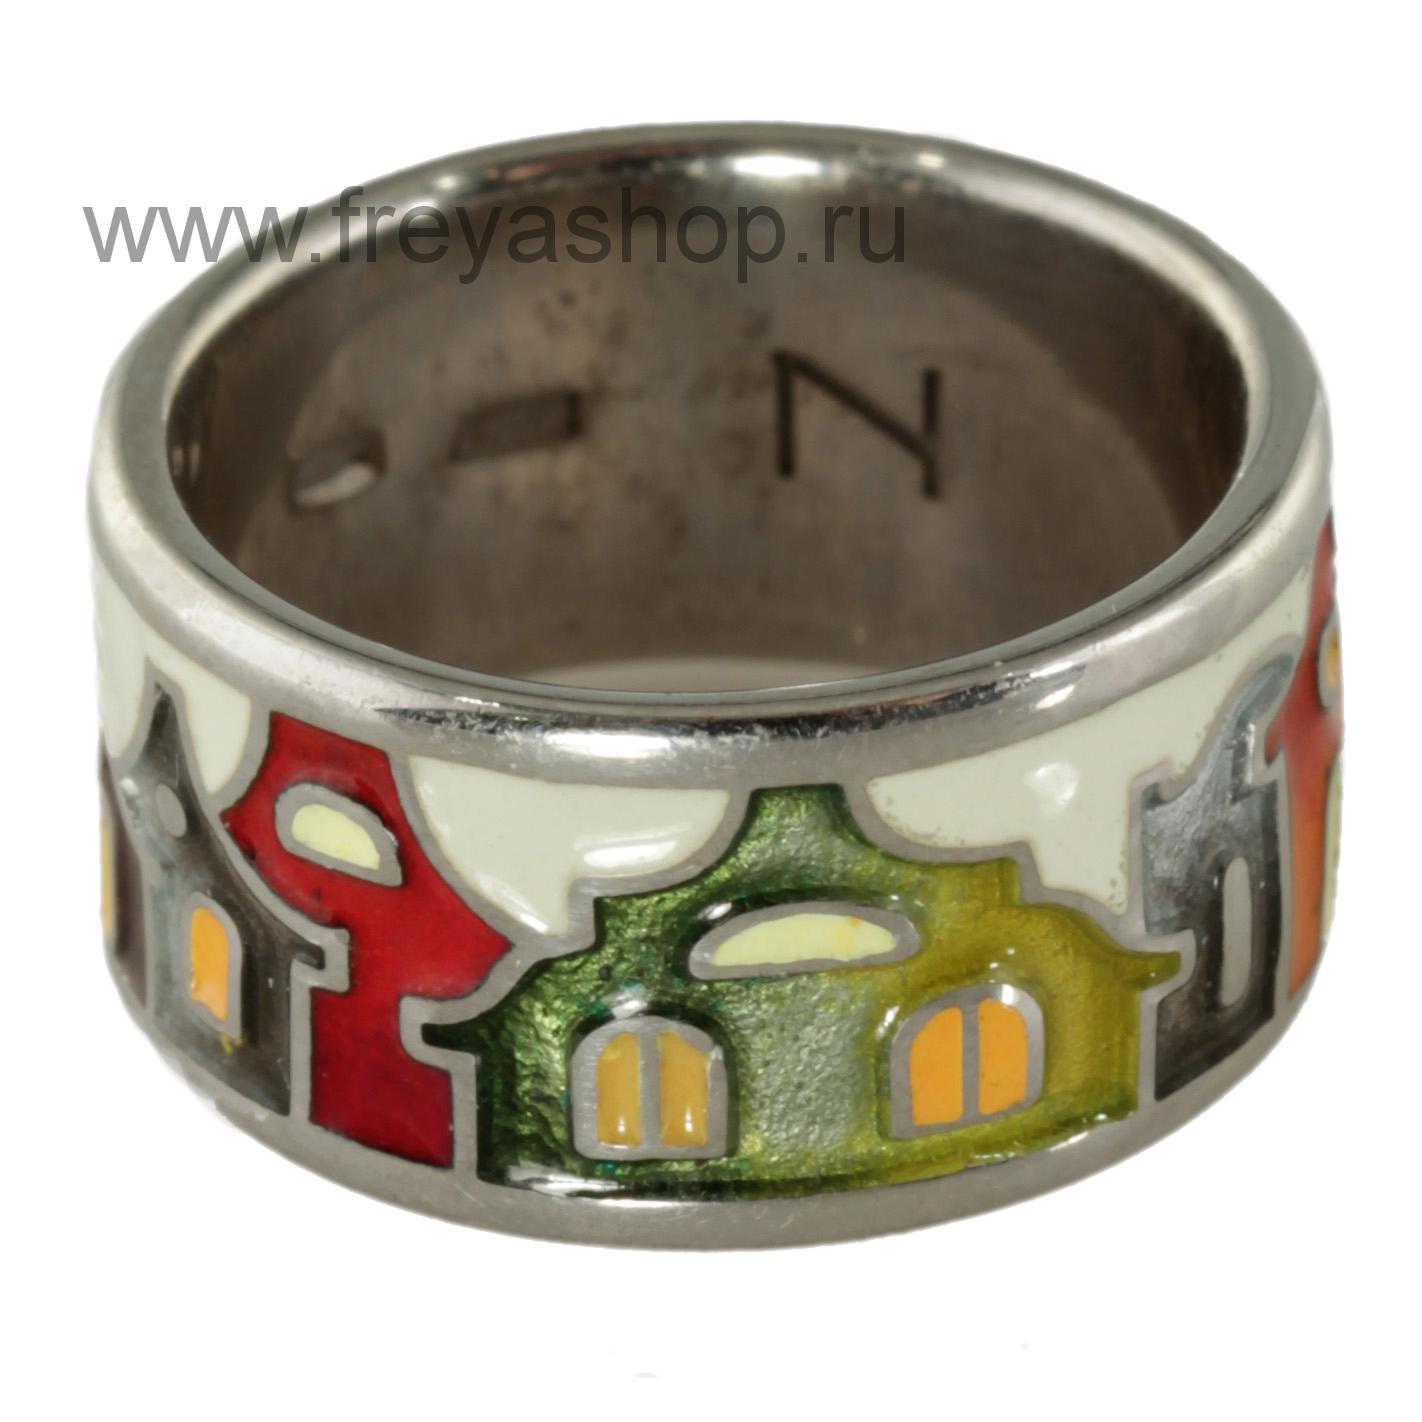 Серебряное кольцо "Итальянские домики" , Россия